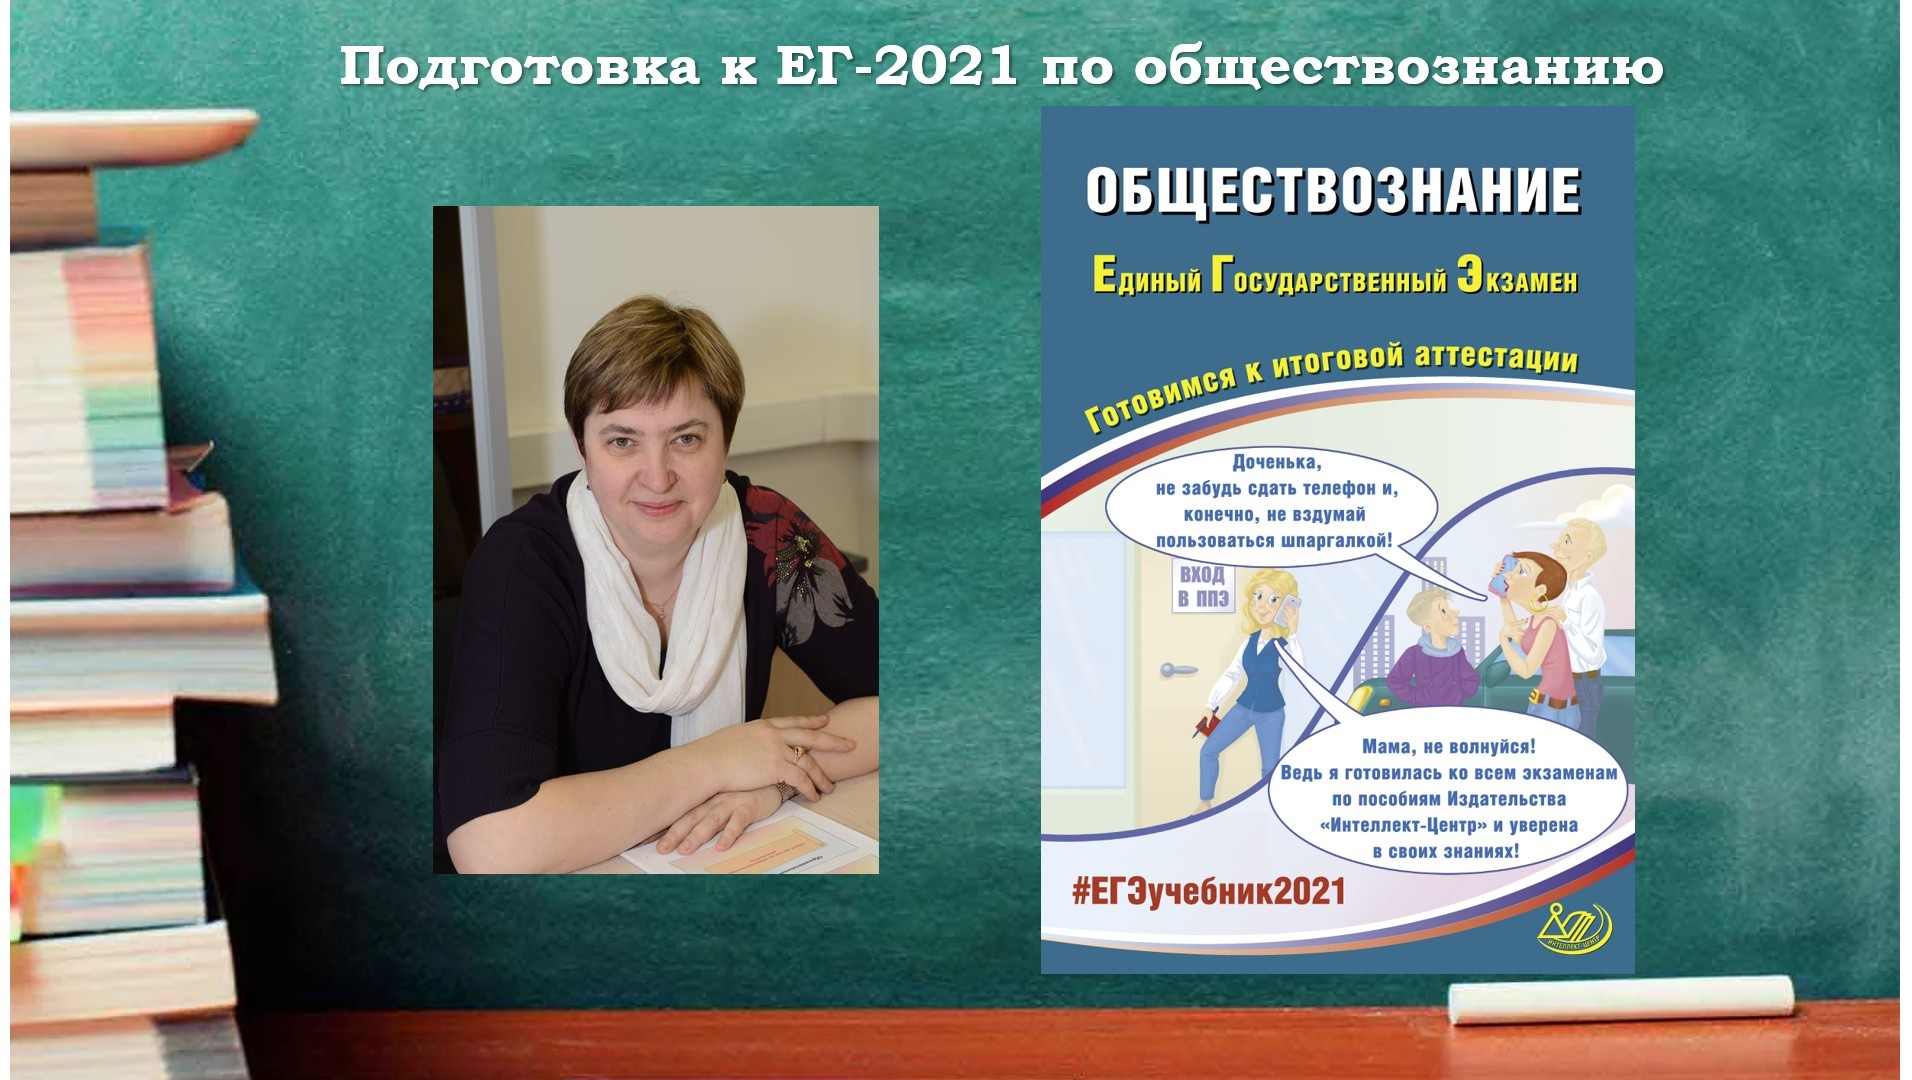 Российская школа обществознание. Обществознание мероприятия. Школа обществознания ЕГЭ 2021.